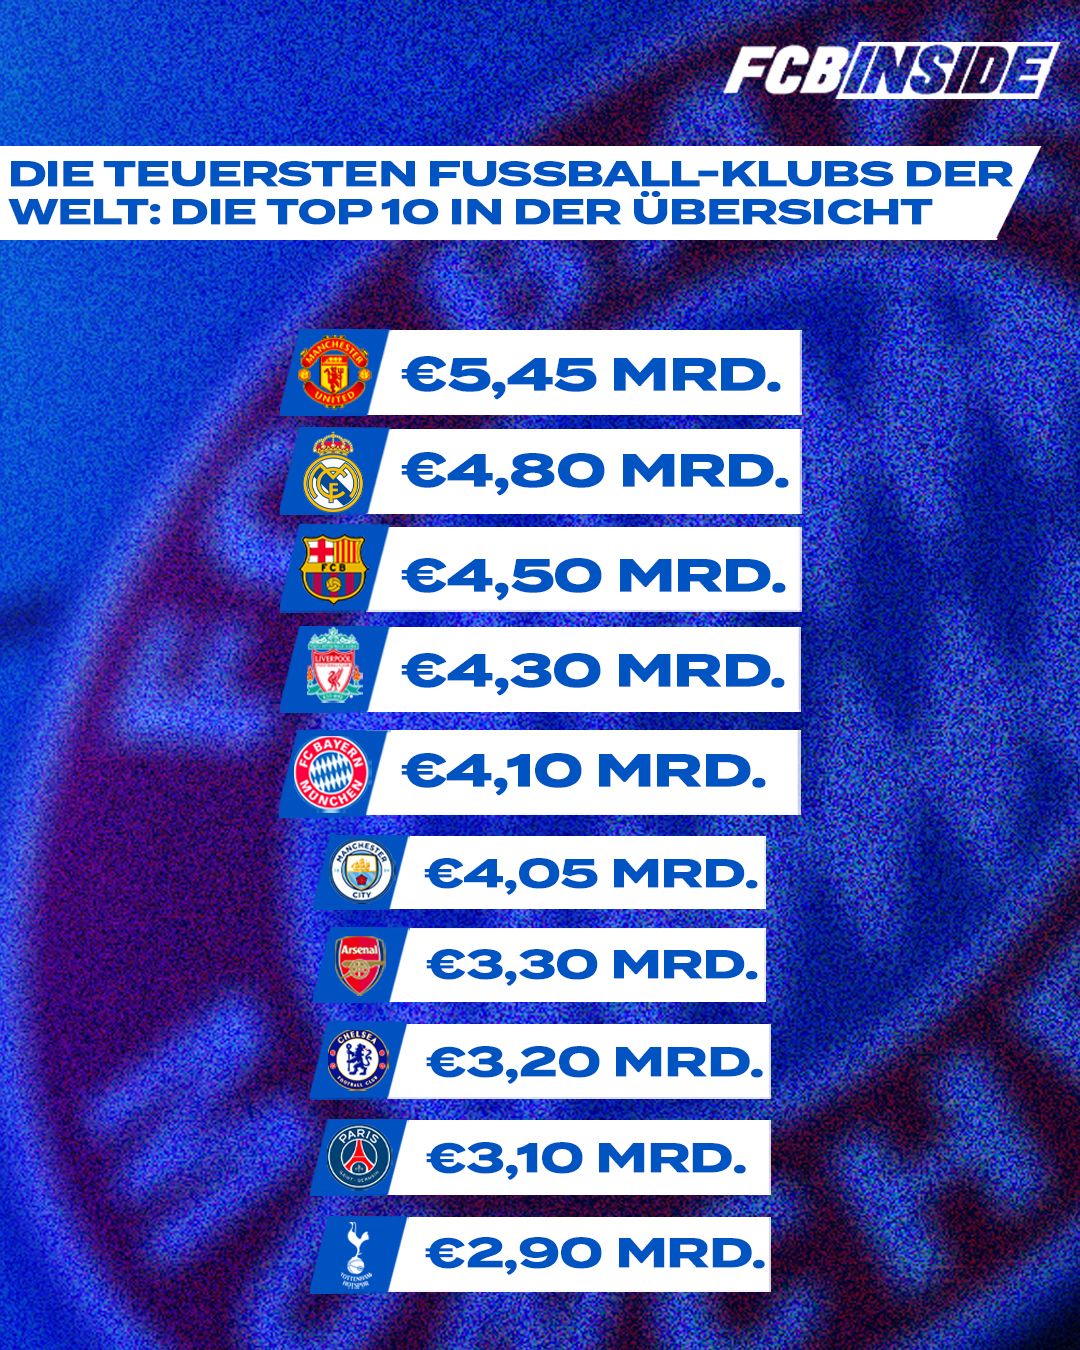 Die teuersten Fußball-Klubs der Welt